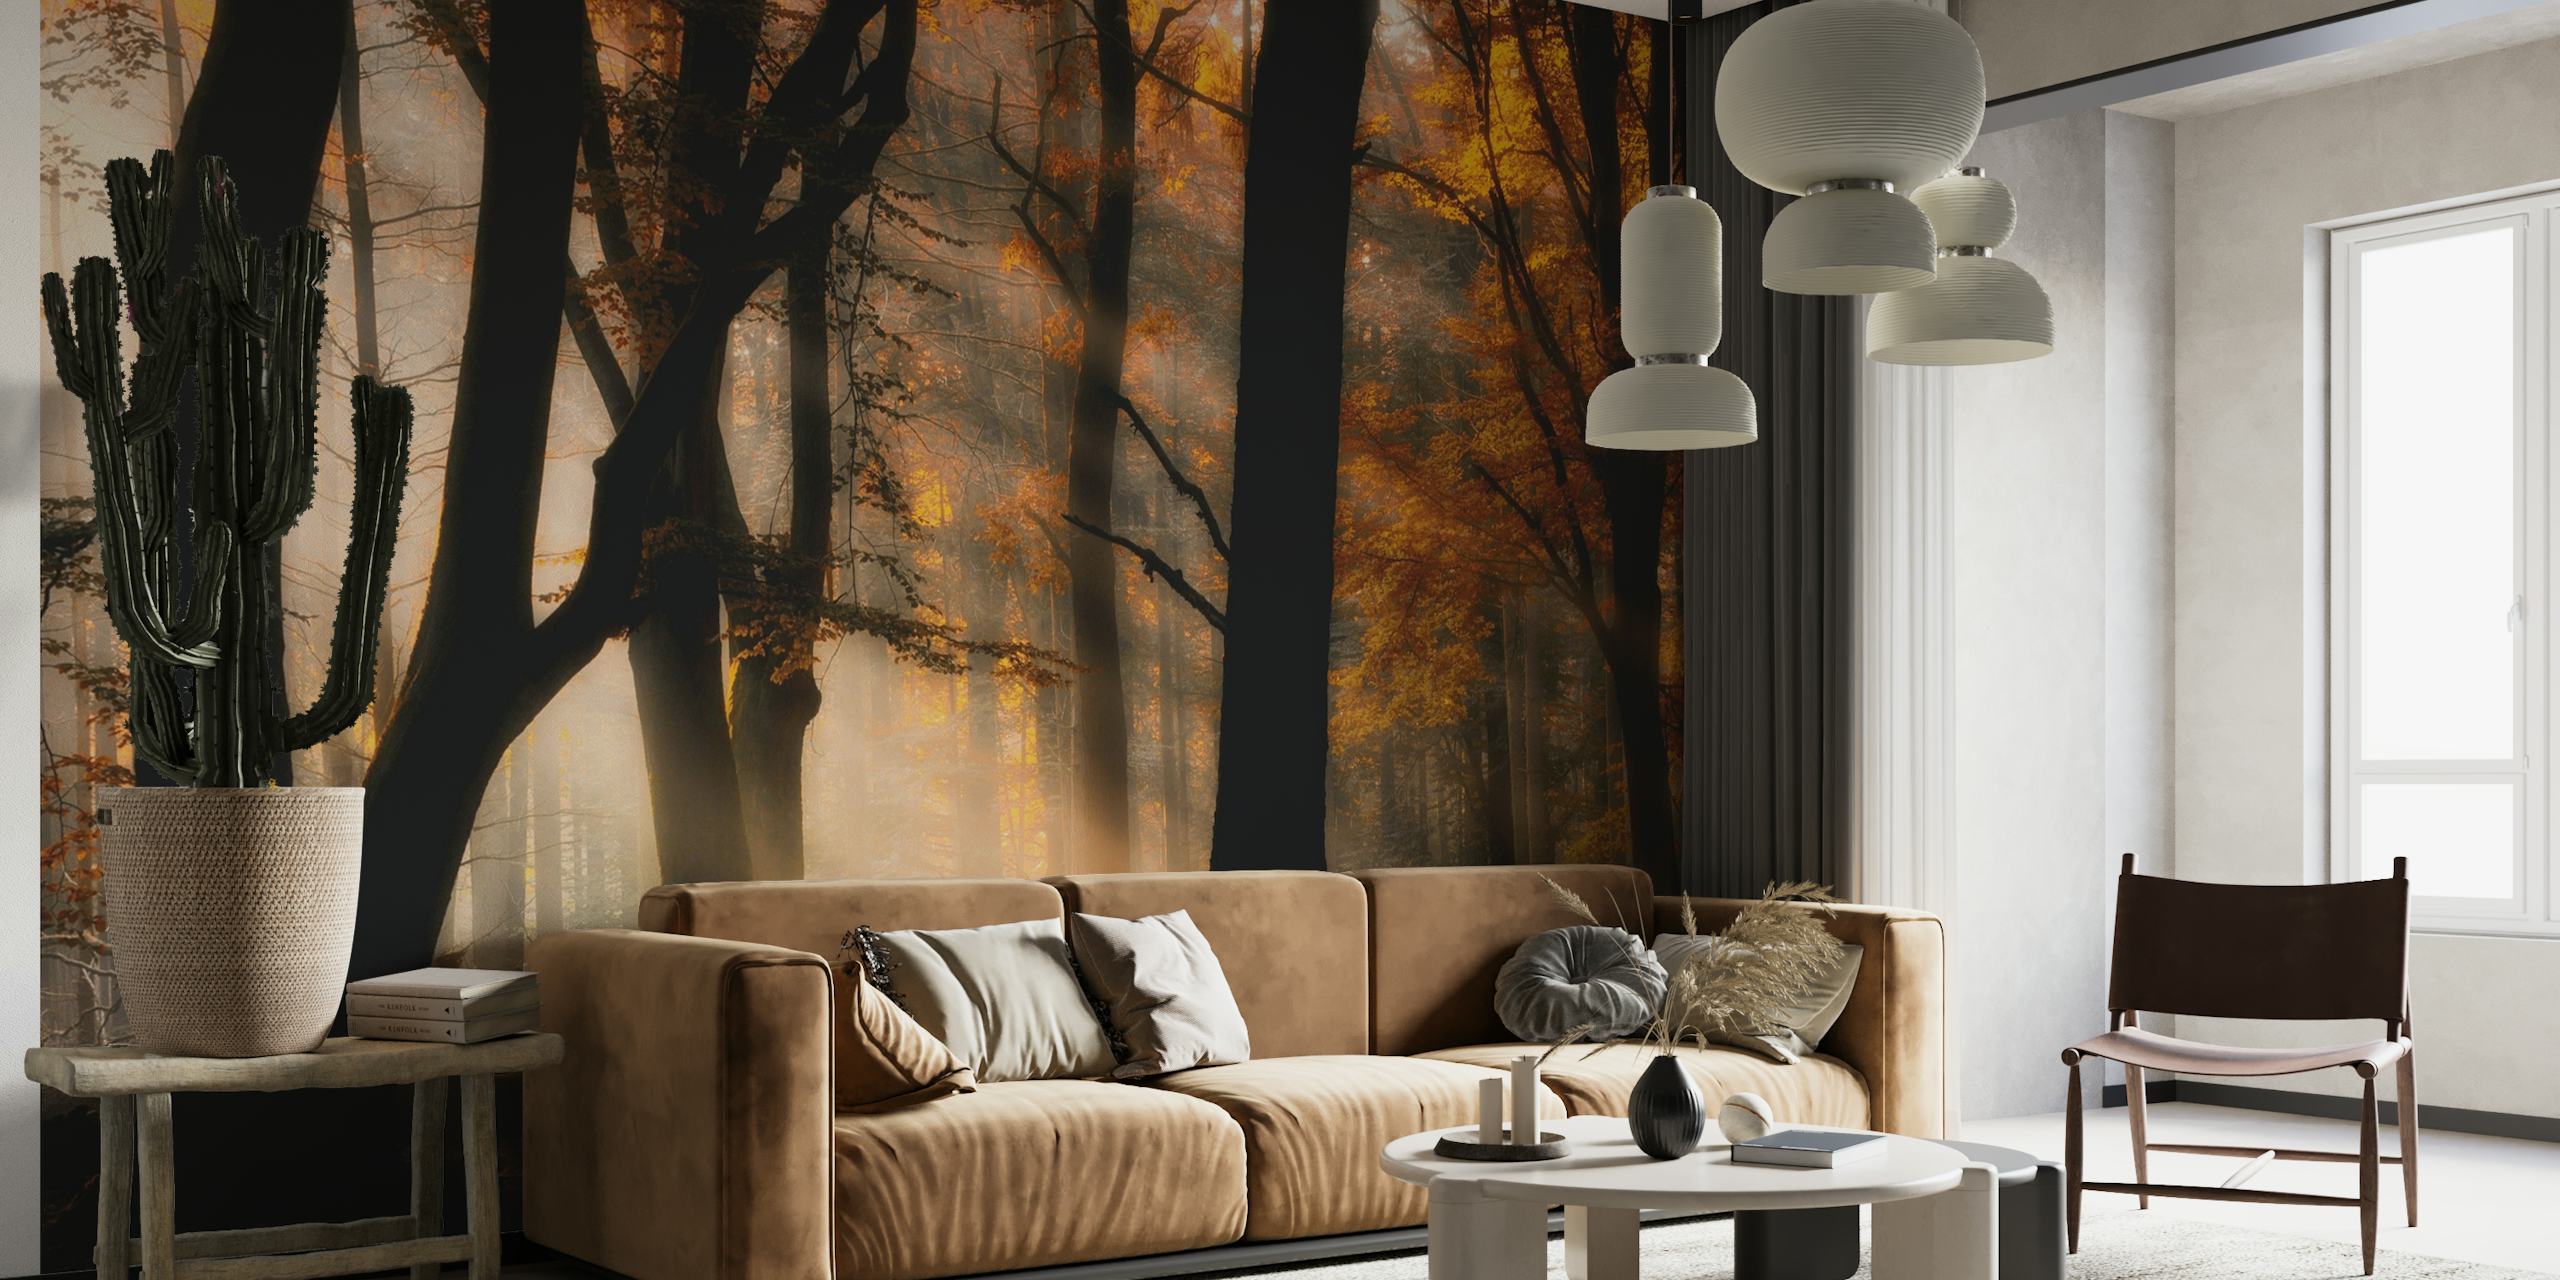 fotomural vinílico de parede com cena de floresta outonal com luz solar filtrada pelas árvores